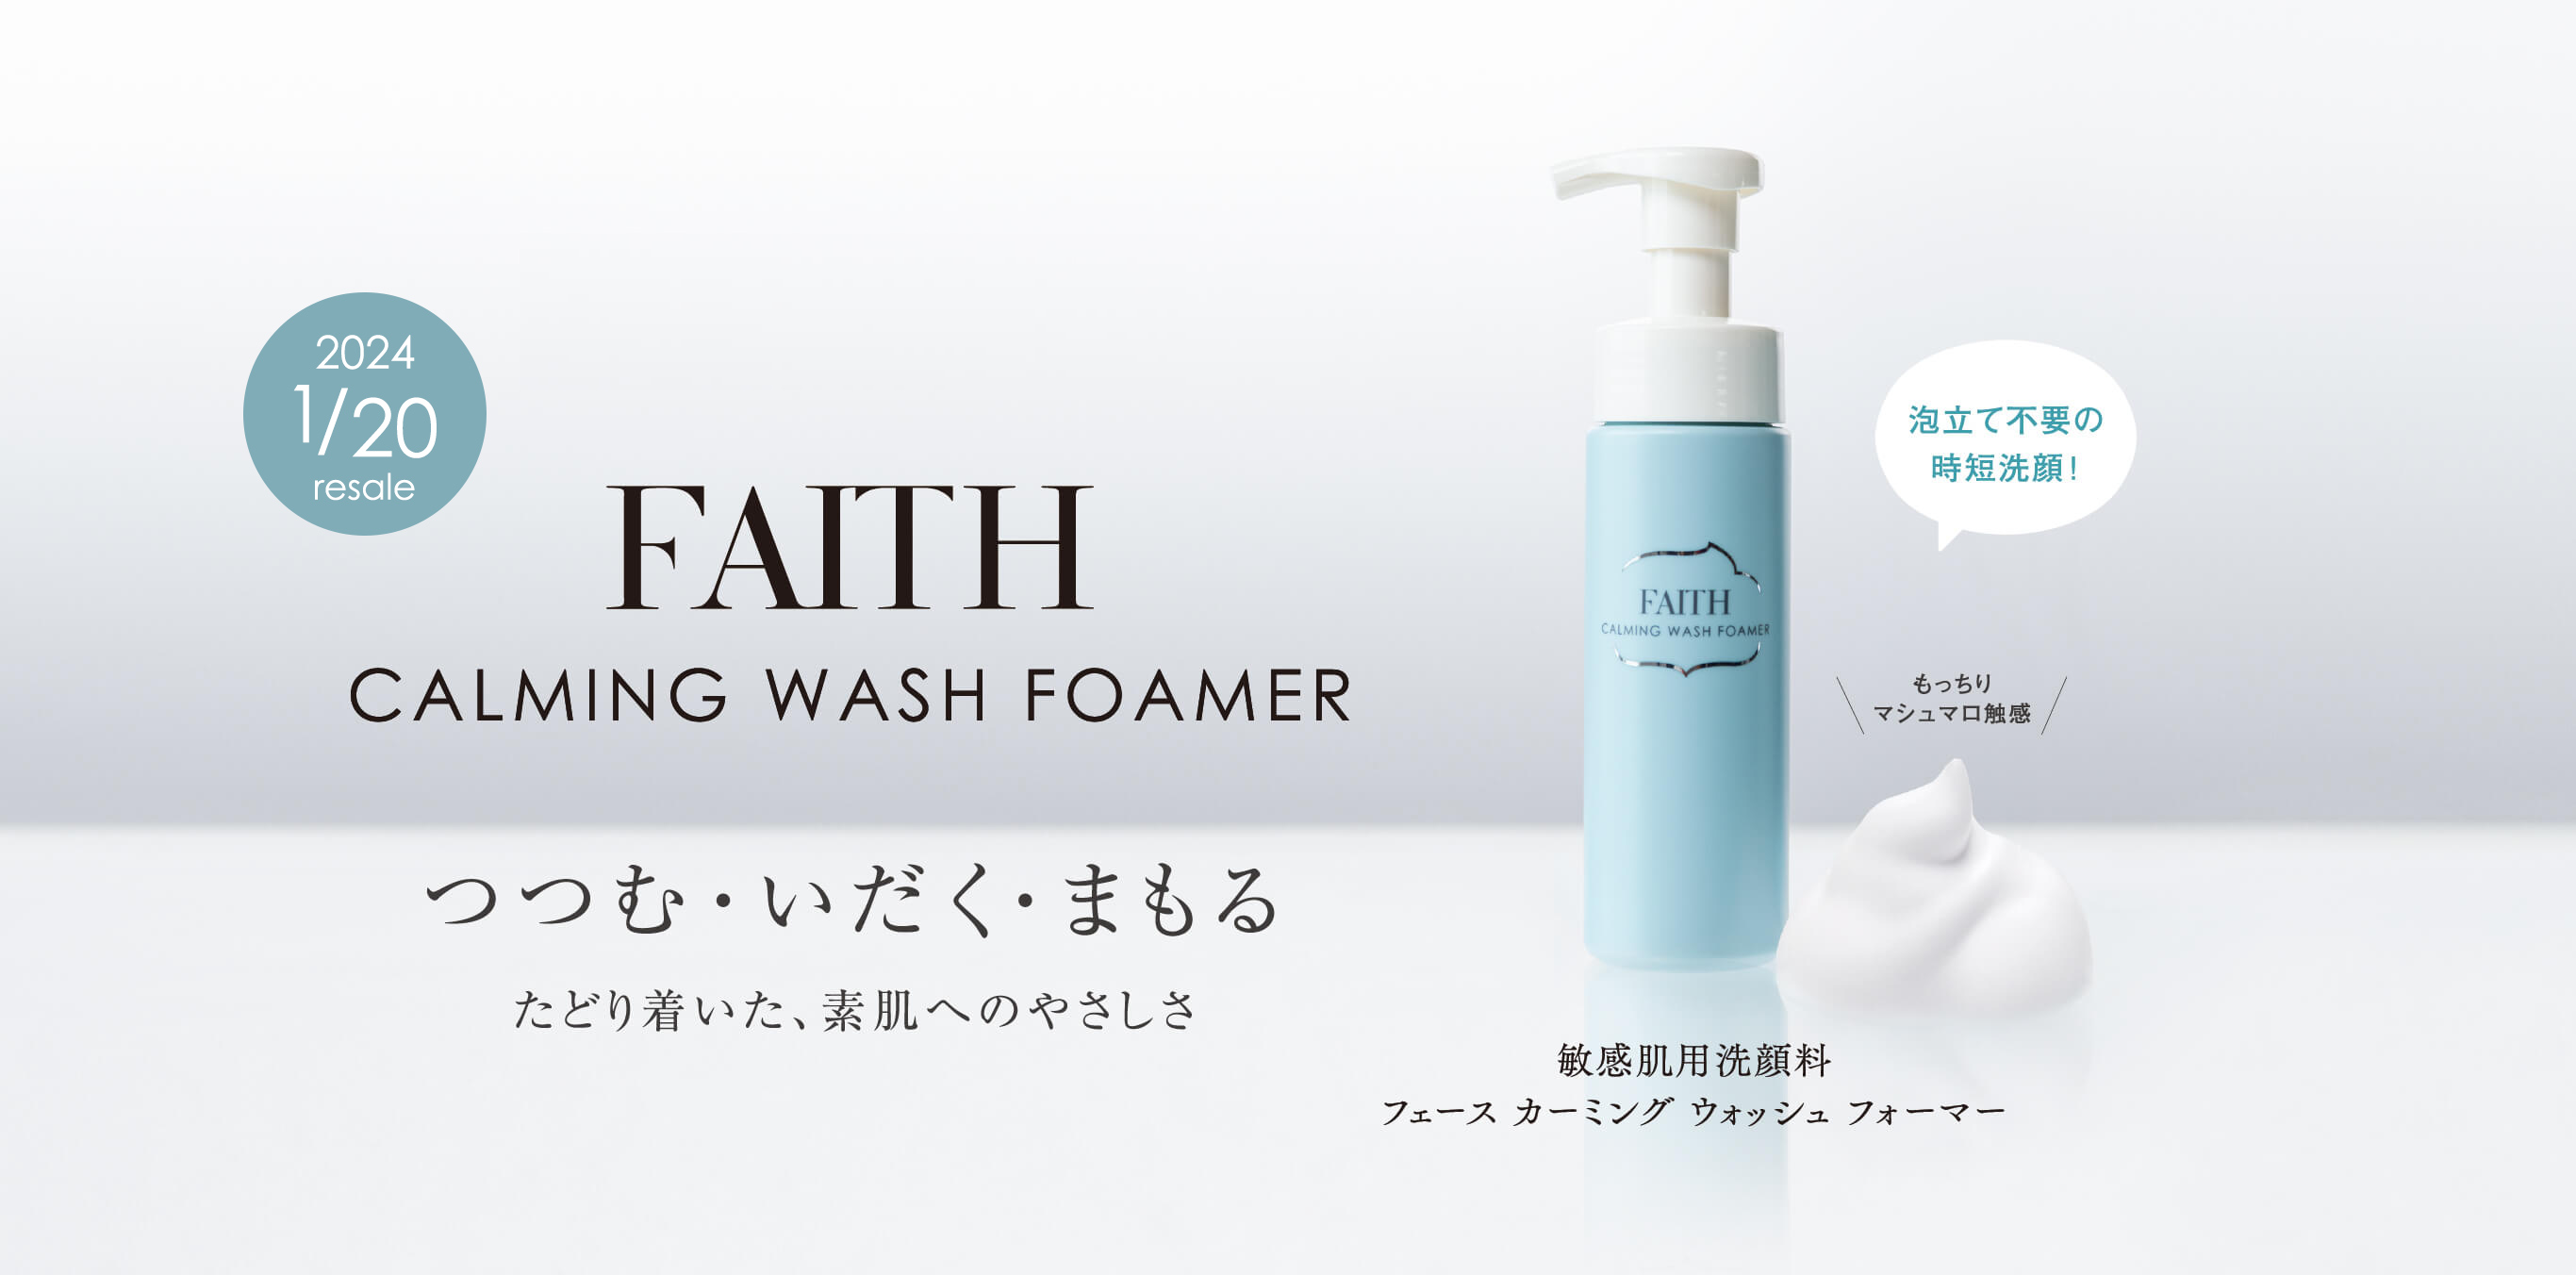 FAITH CALMING WASH FOAMER 敏感肌用洗顔料 フェースカーミングウォッシュフォーマー 泡立て不要の時短洗顔